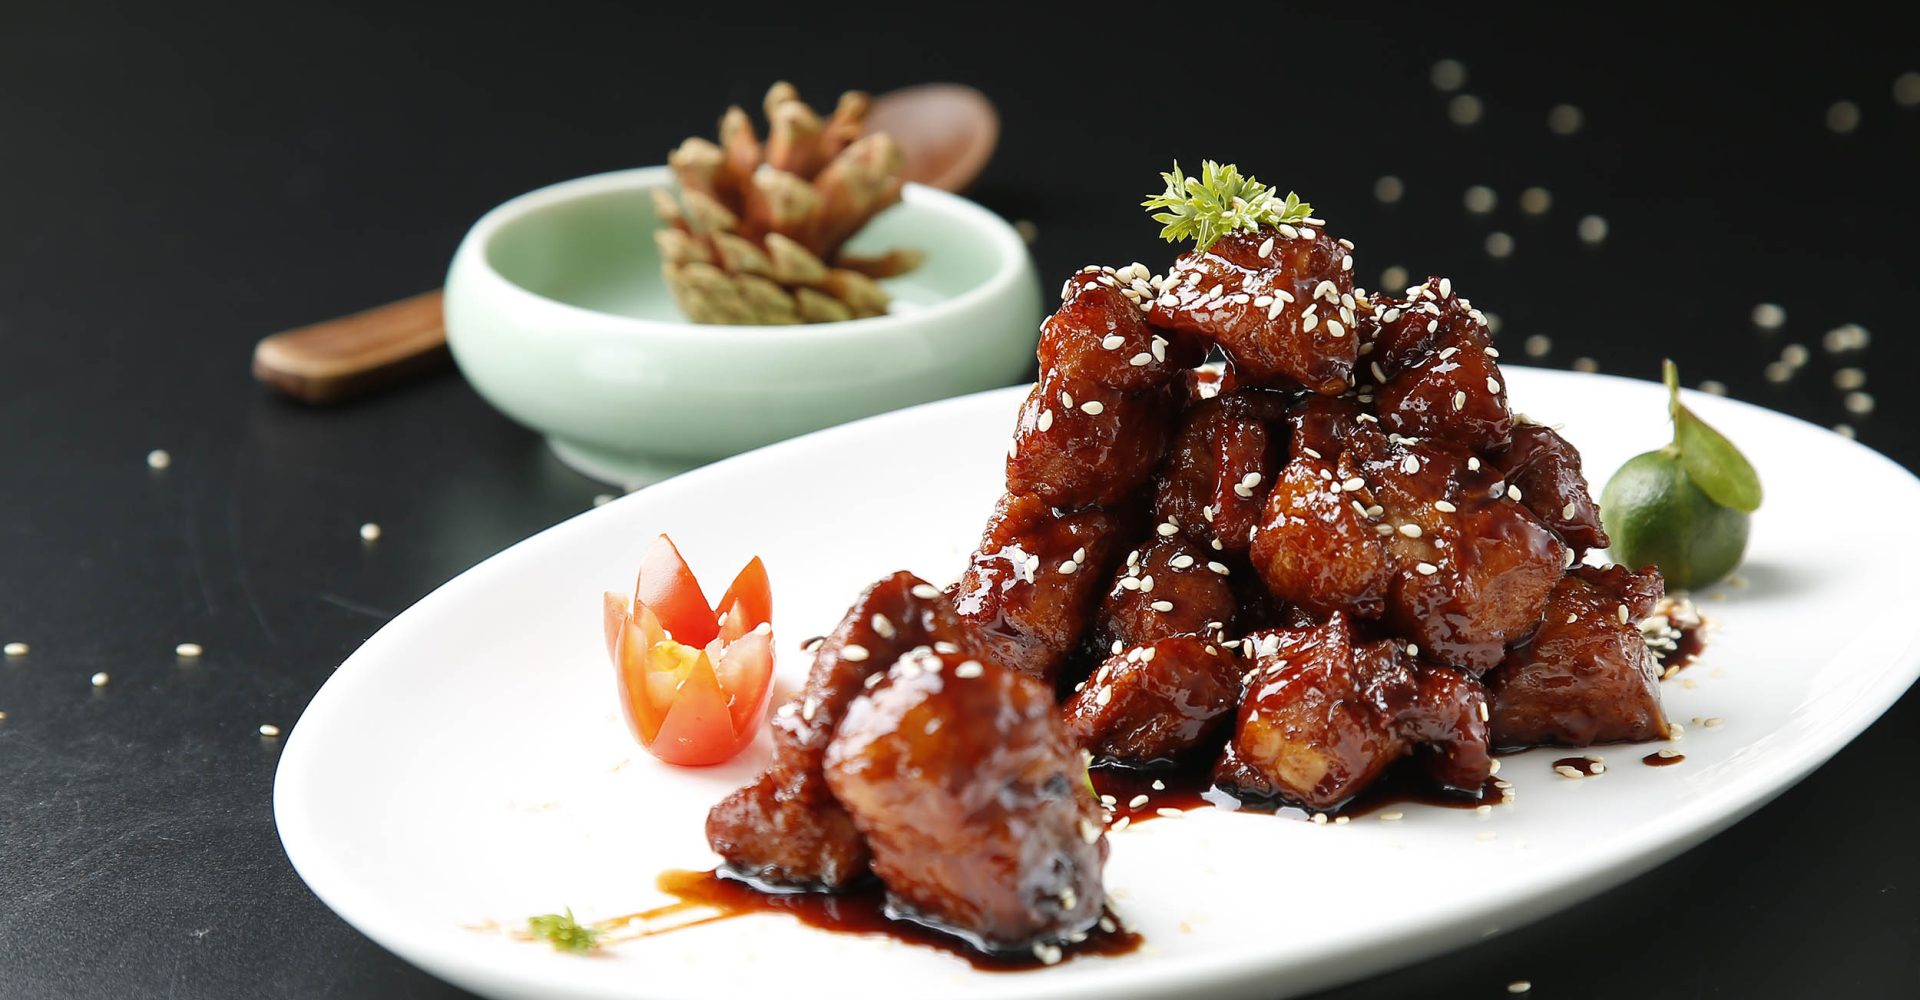 Xiu Pork - Spareribs in balsamic vinegar sauce